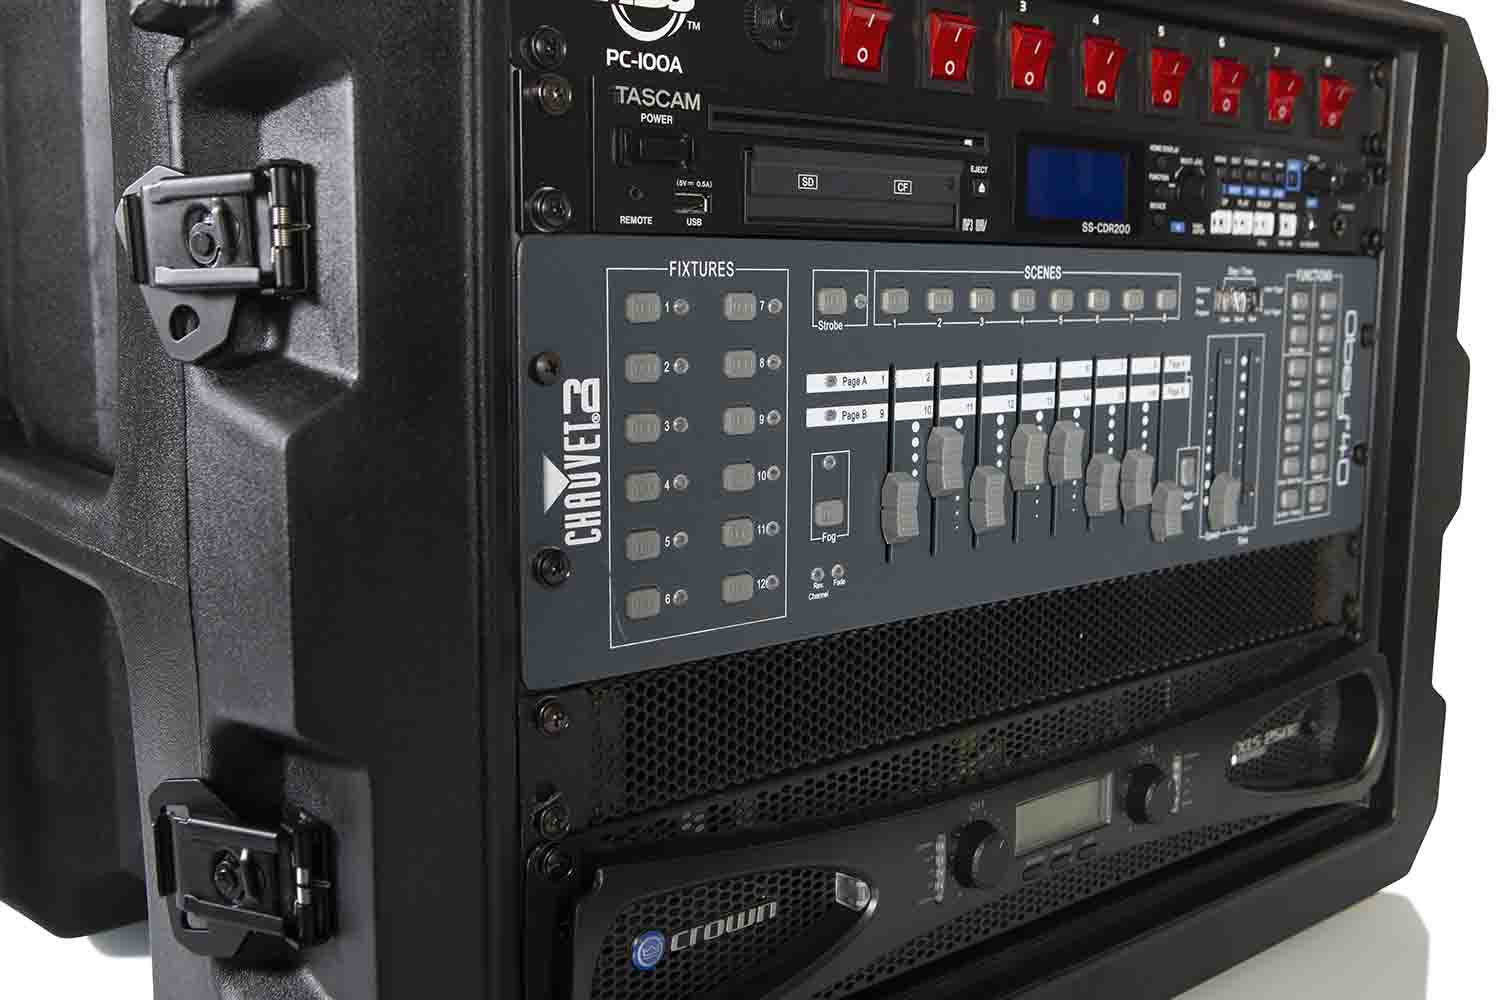 Gator Cases G-PROR-8U-19, 8U Deep Molded Audio Rack Case with Wheels - 19 Inch - Hollywood DJ